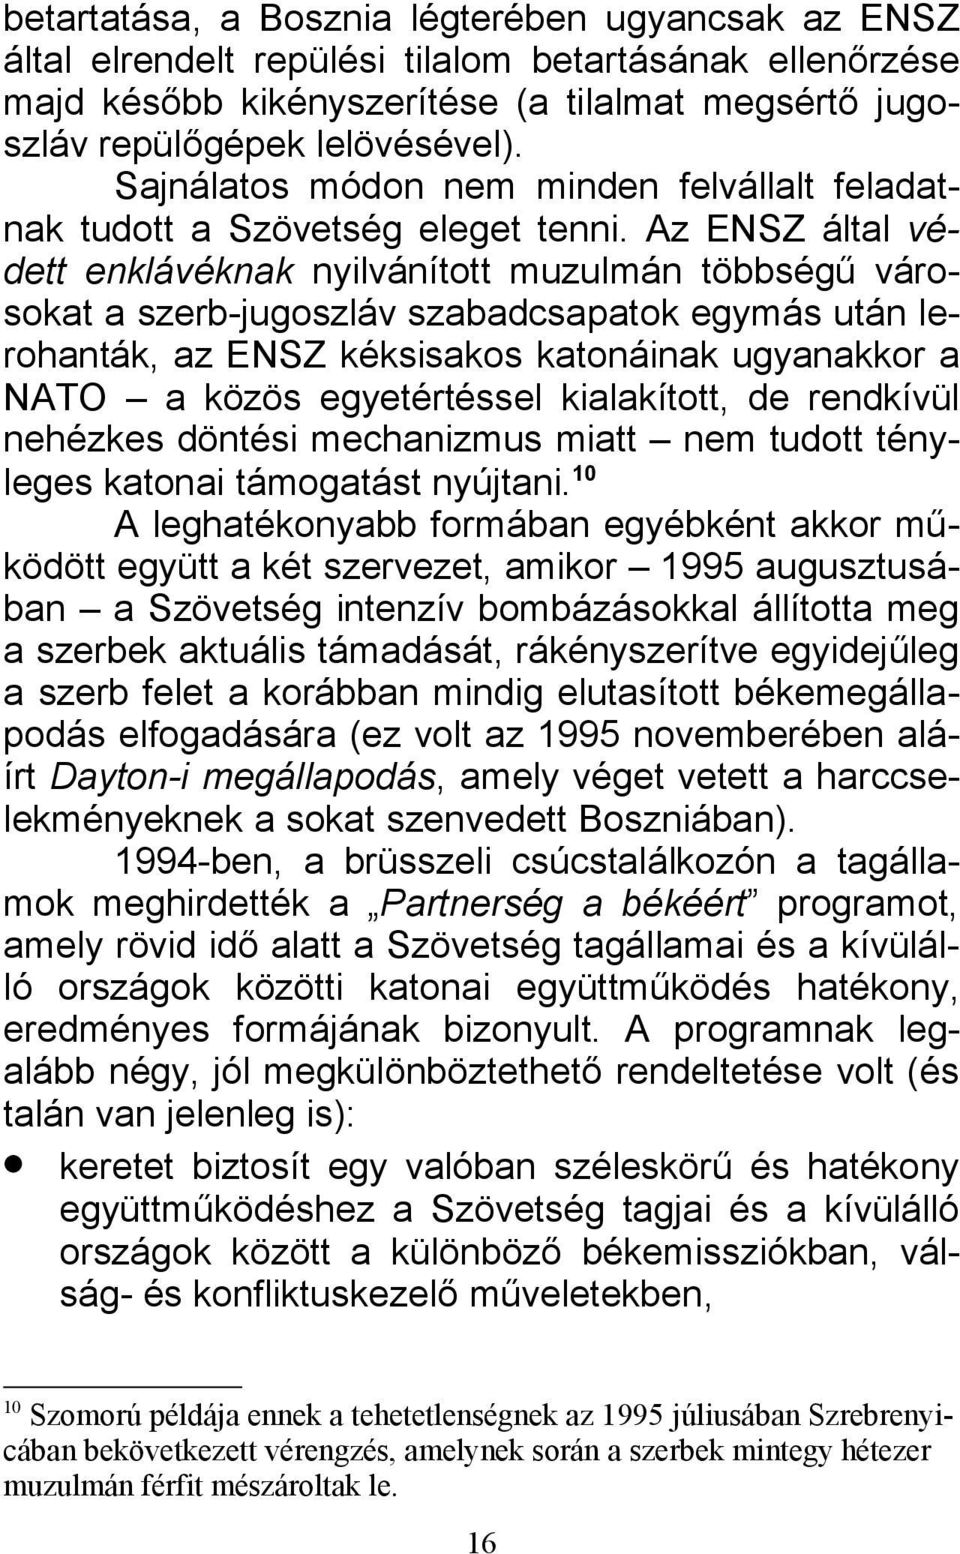 Az ENSZ által védett enklávéknak nyilvánított muzulmán többségű városokat a szerb-jugoszláv szabadcsapatok egymás után lerohanták, az ENSZ kéksisakos katonáinak ugyanakkor a NATO a közös